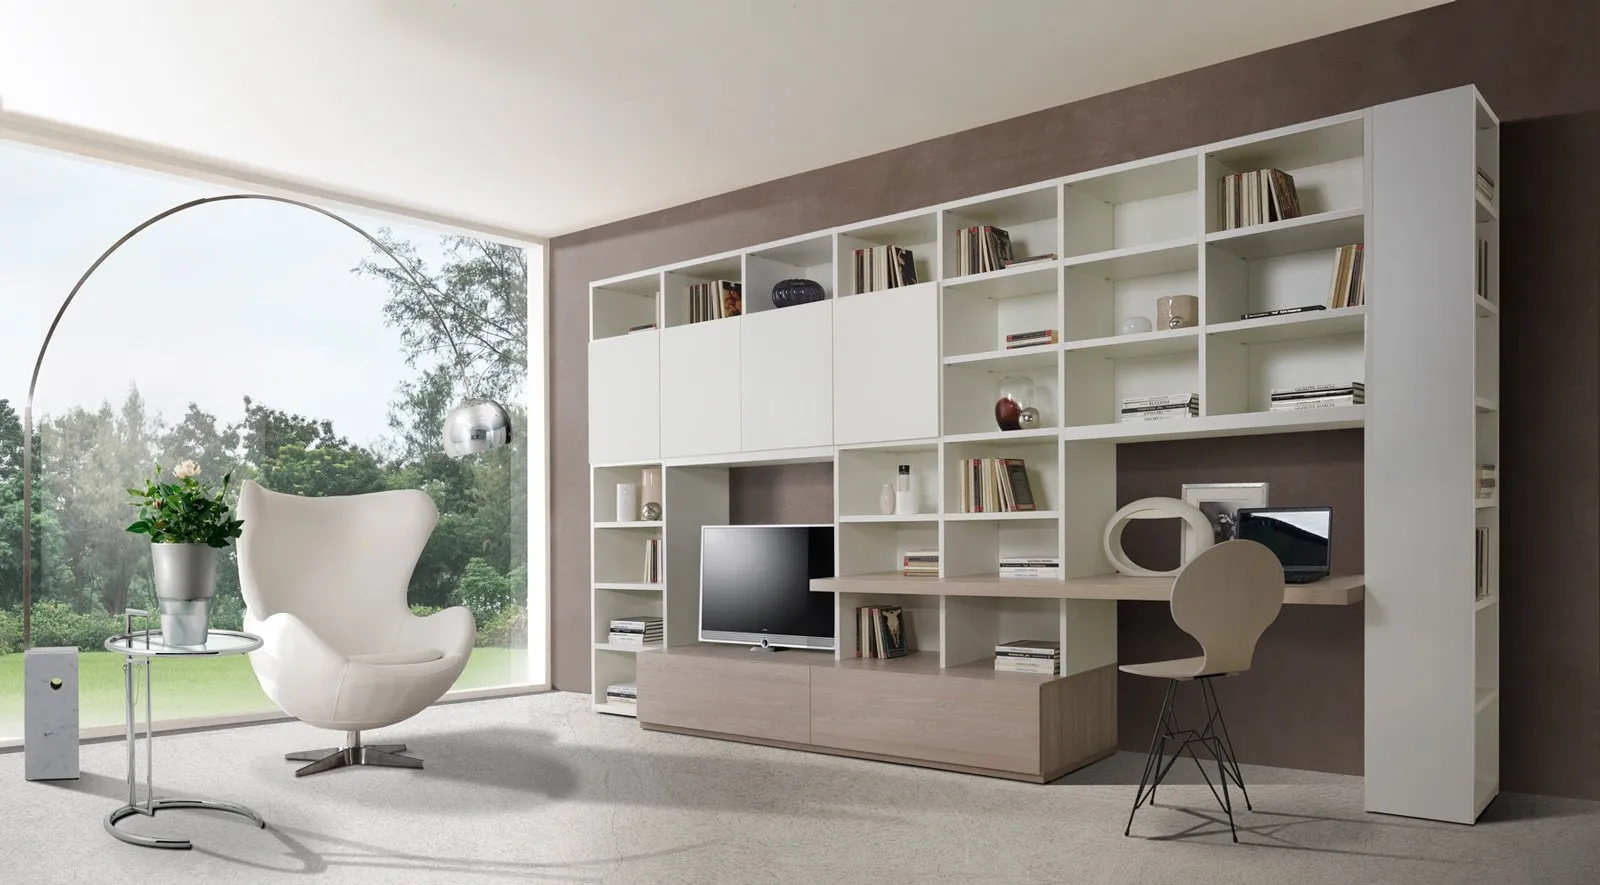 Mobili salotto moderni come arredare il living mobili for Salotto arredamento